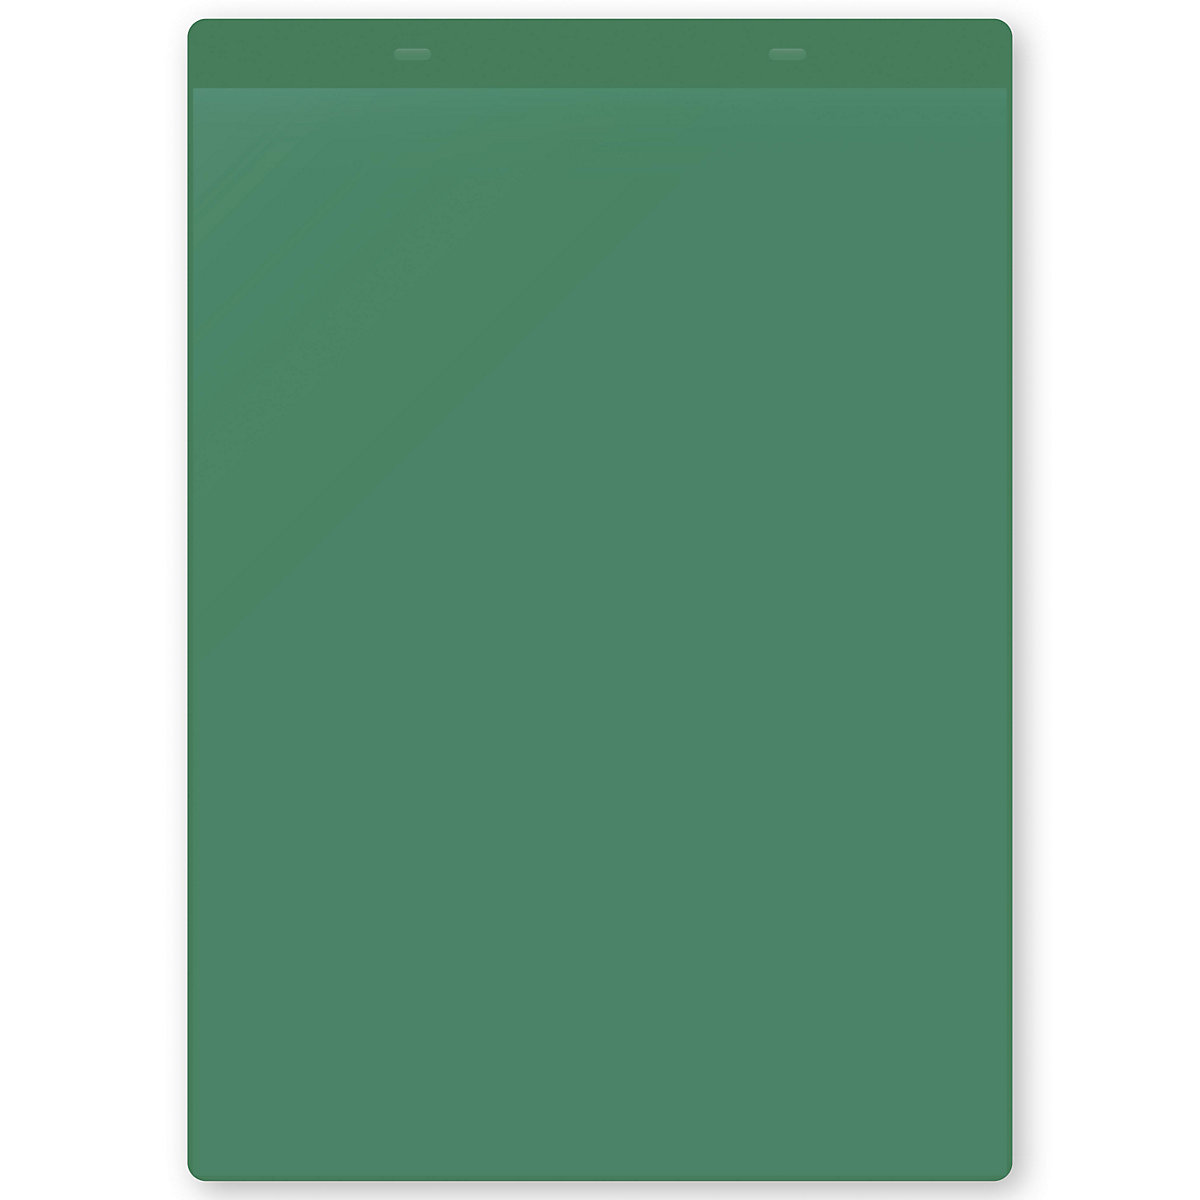 Öntapadó dokumentumtartó tasakok, DIN A4, álló, cs. e. 10 db, zöld